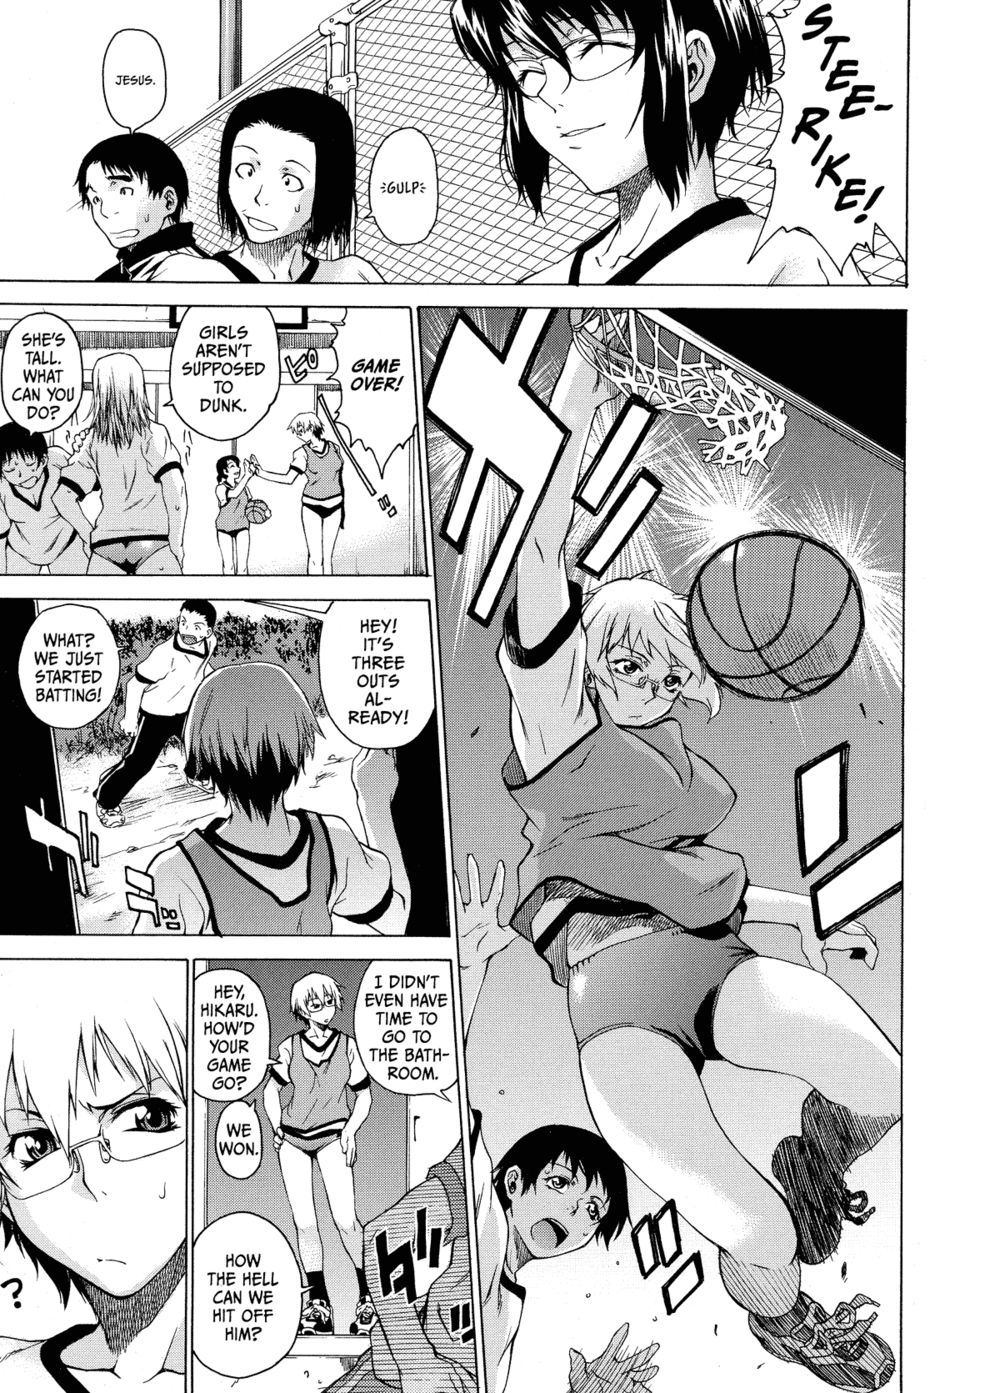 Hentai Manga Comic-Domin-8 Me!-Read-135